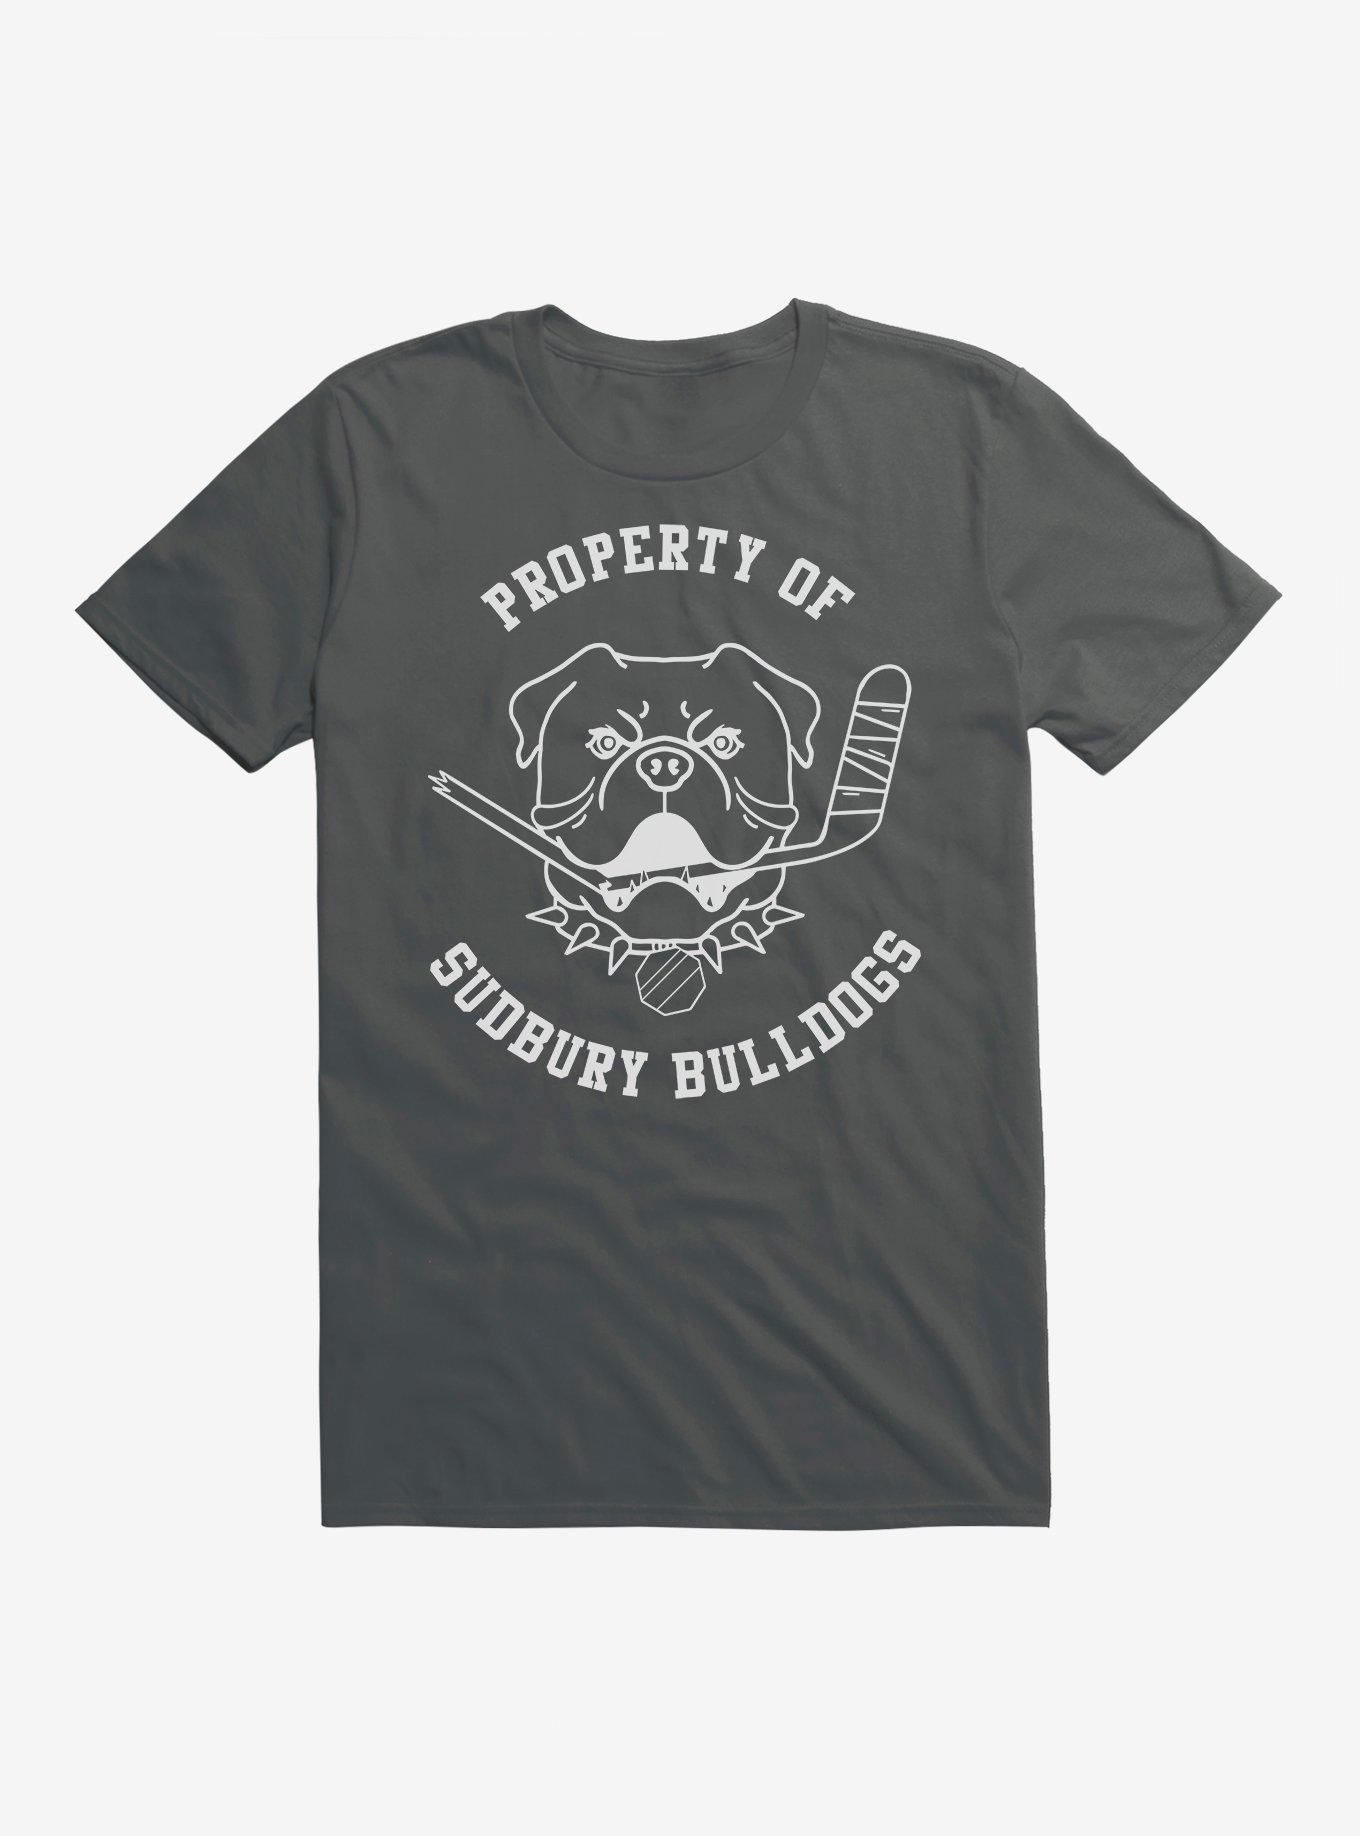 Sudbury Bulldog' Men's T-Shirt